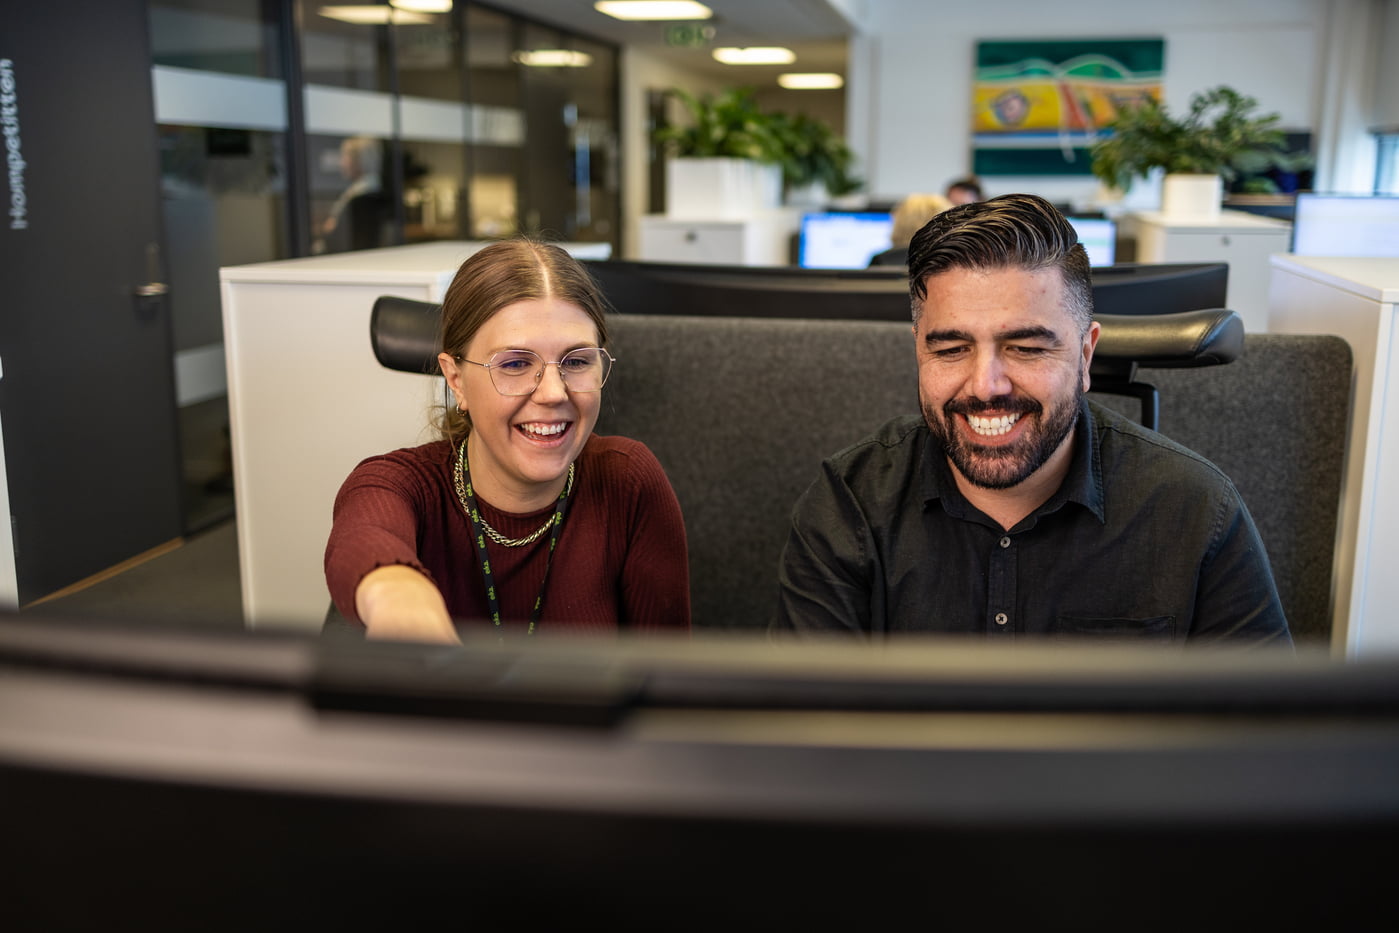 kvinne og mann peker og smiler til pc-skjermen i et åpent kontor landskap